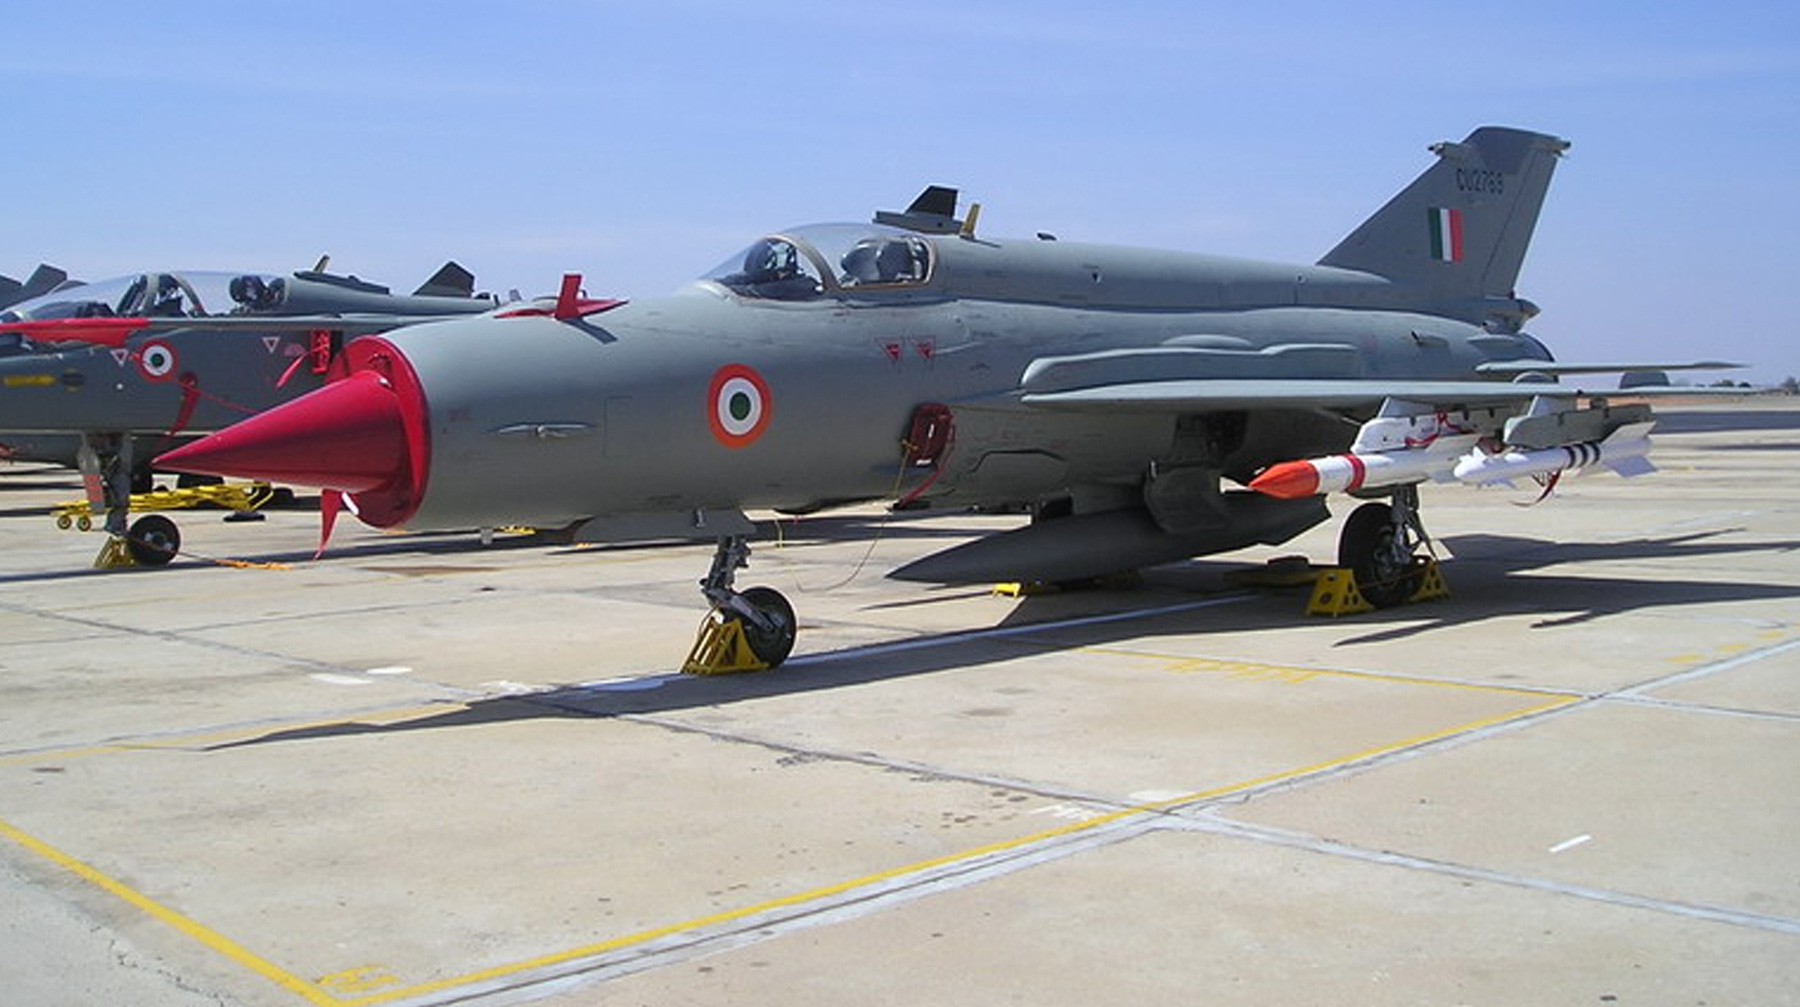 Пилот МиГ-21 попал в плен после уничтожения его самолета во время воздушного боя 27 февраля ВВС Индии МиГ-21